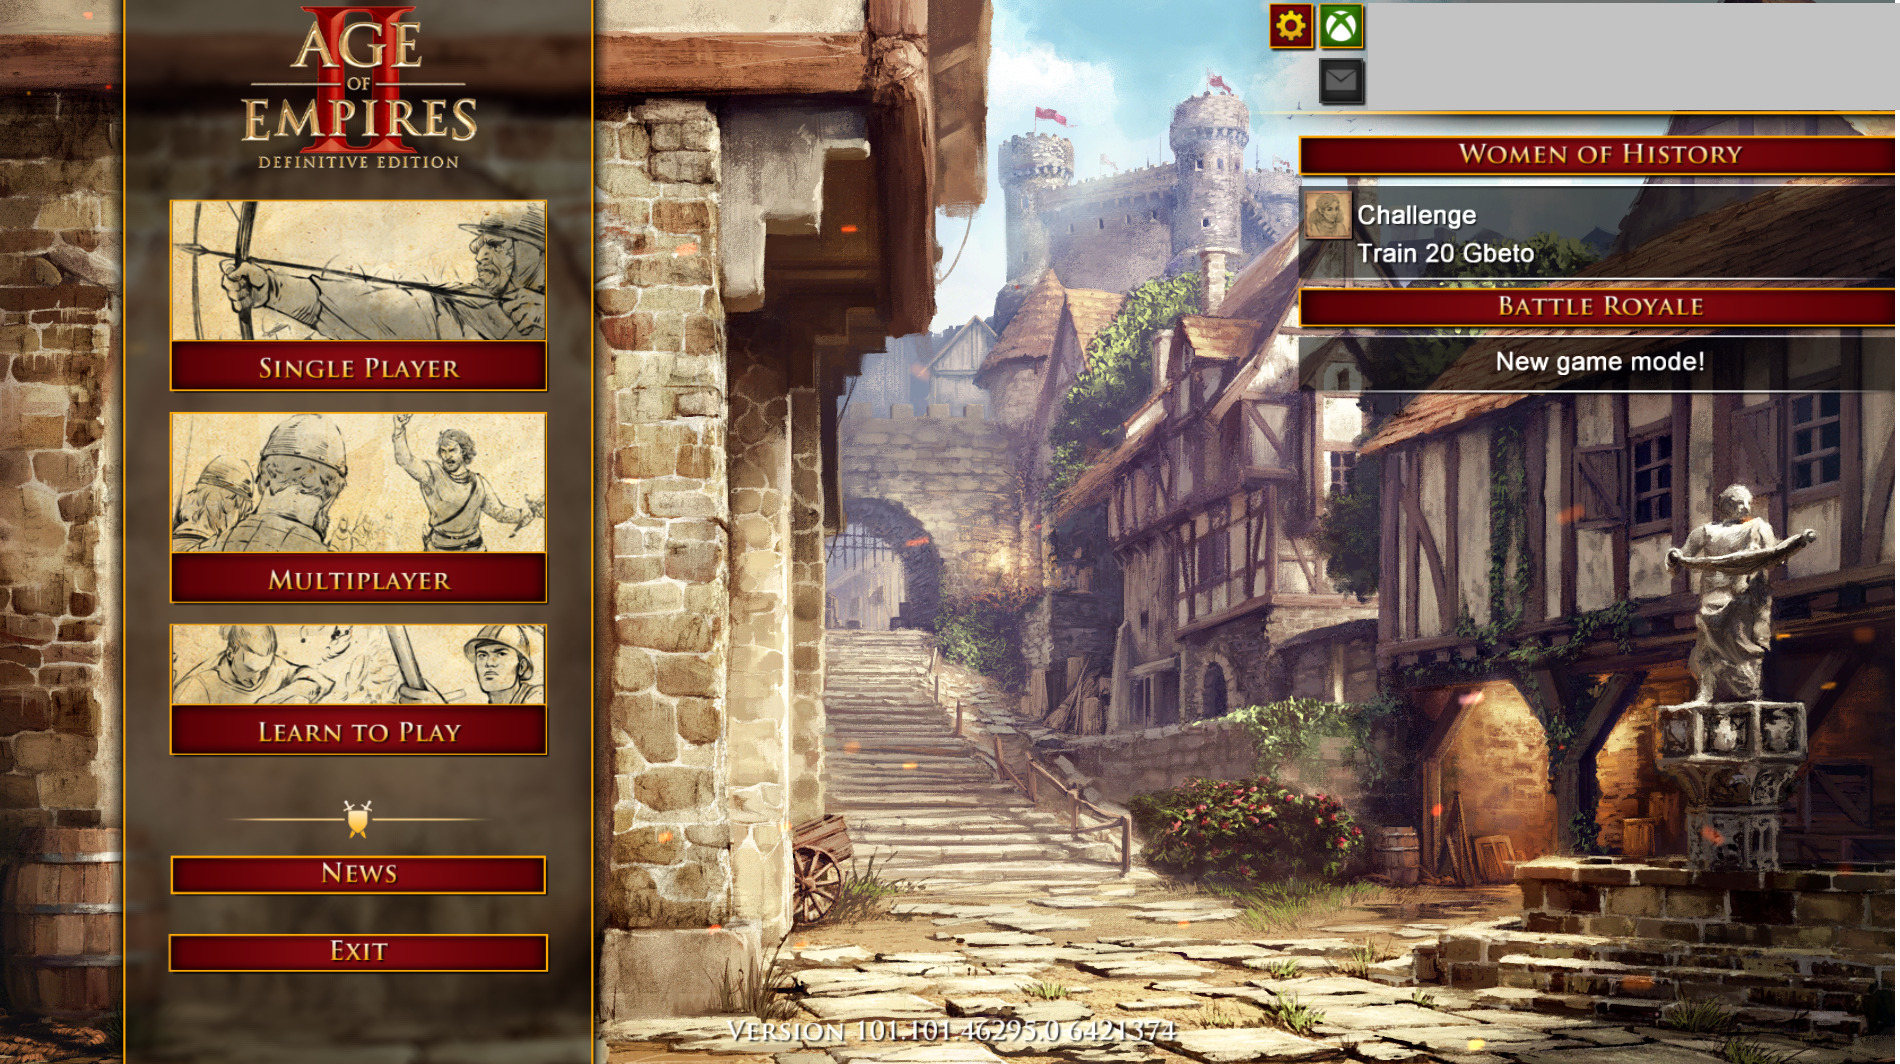 Khám phá ngay hình nền độc đáo trong menu chính của trò chơi Age of Empires để có trải nghiệm mới lạ và thú vị hơn.